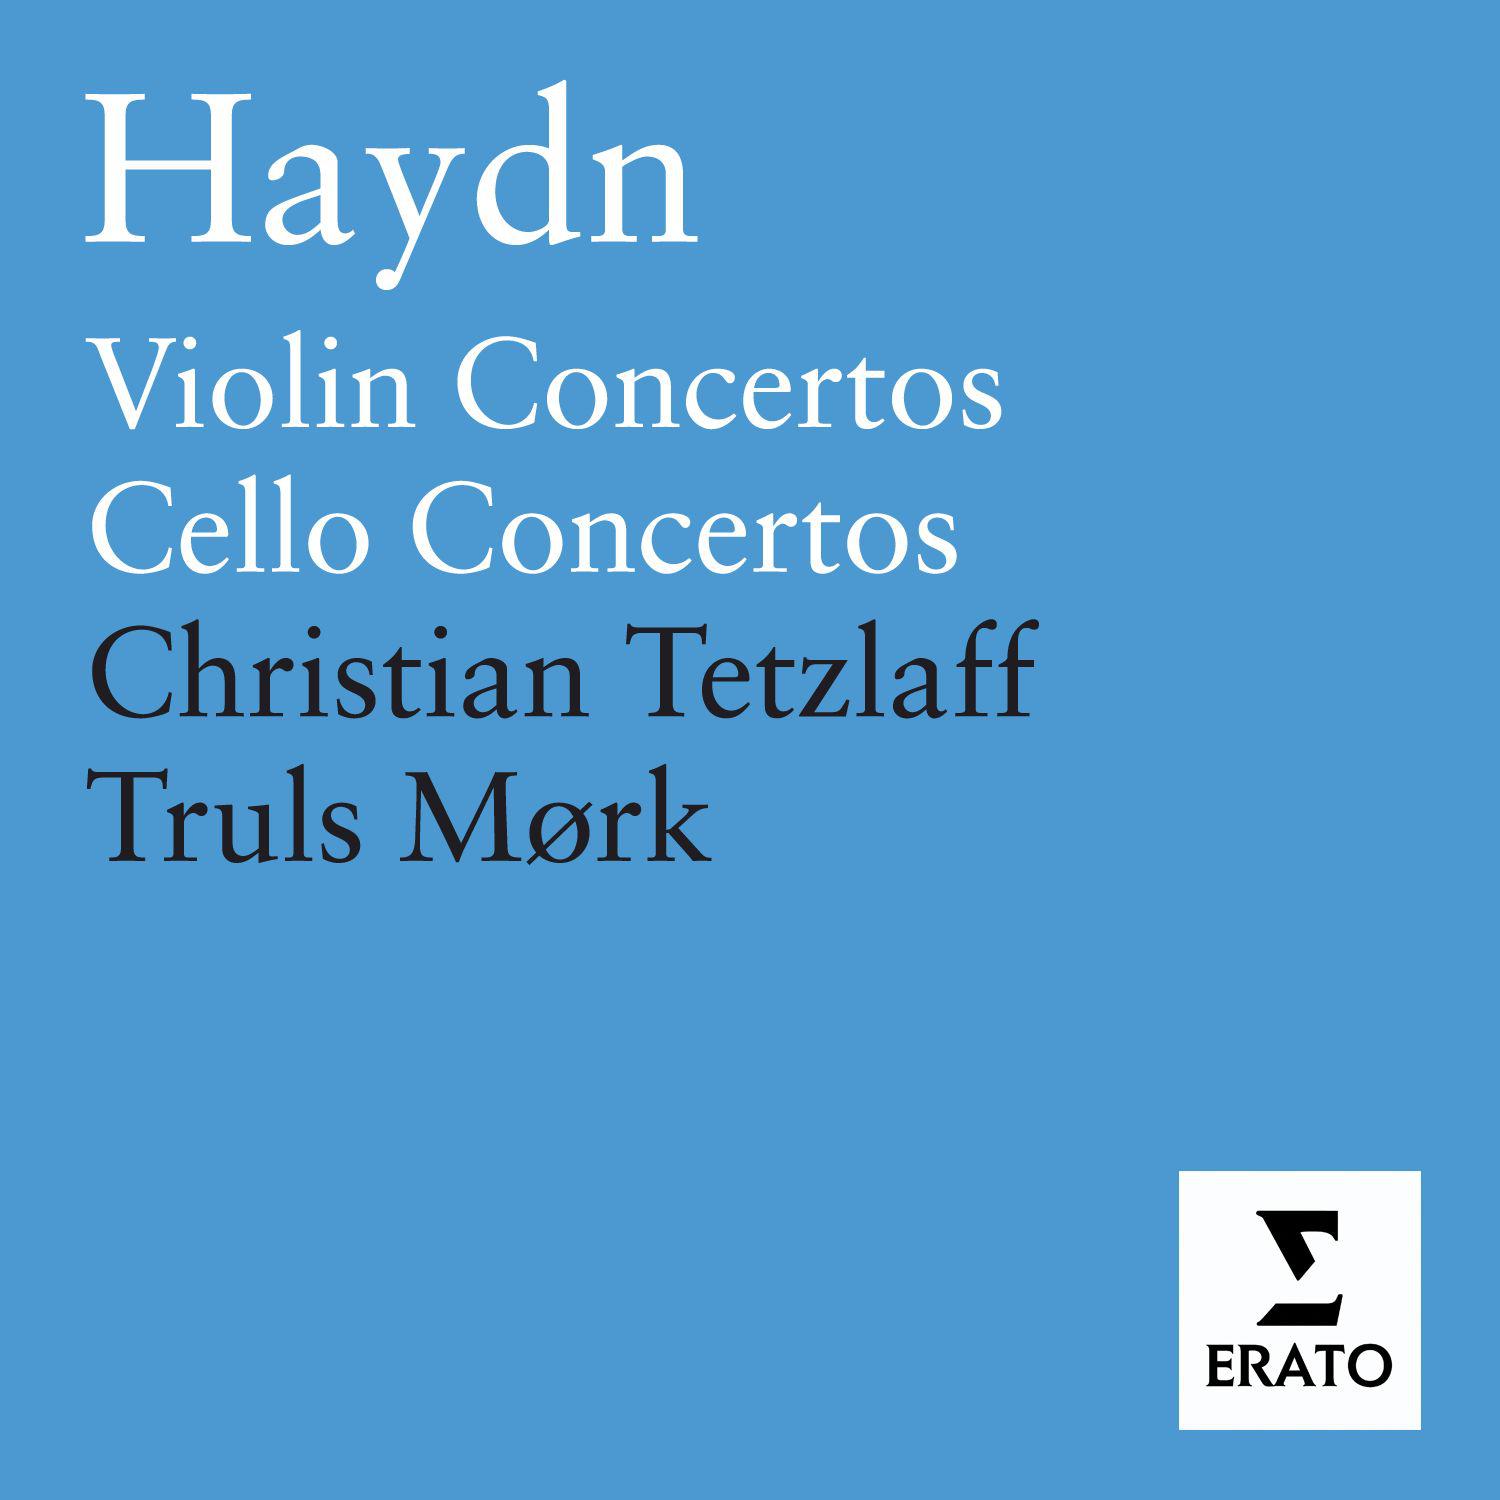 Cello Concerto No. 2 in D Major, Hob. VIIb/2: II. Adagio